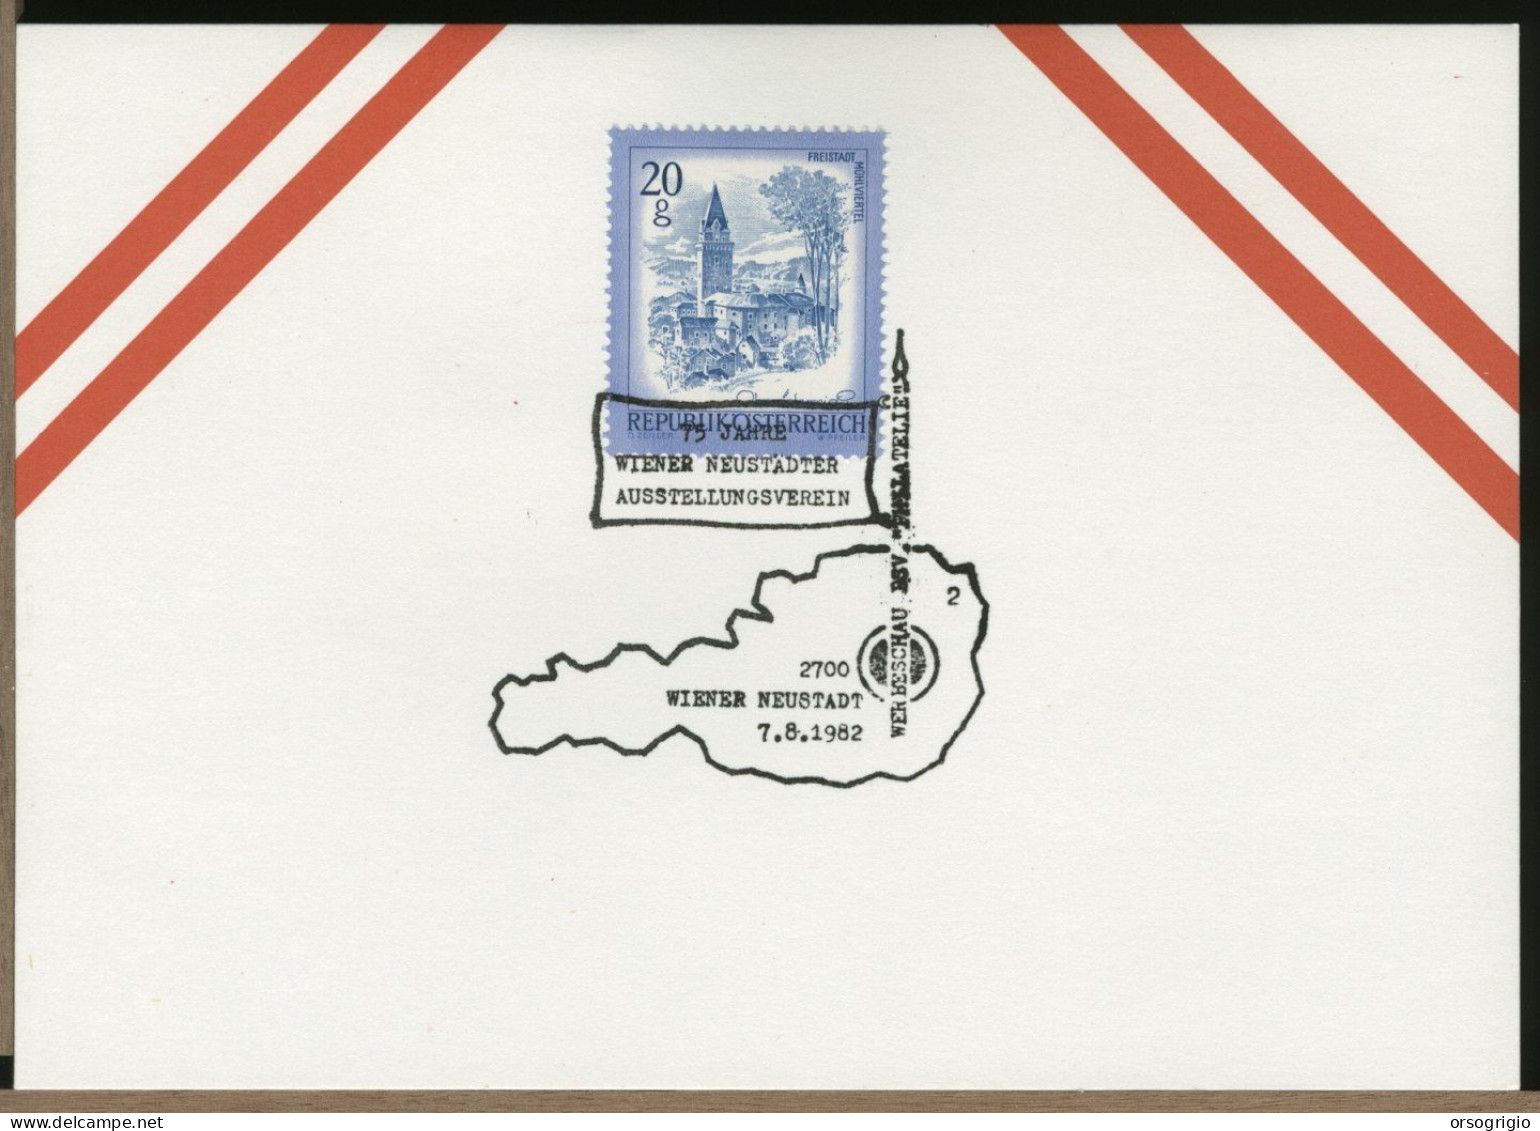 AUSTRIA OSTERREICH  -  WIEN - 1982 - WIENER NEUSTADT - Lettres & Documents